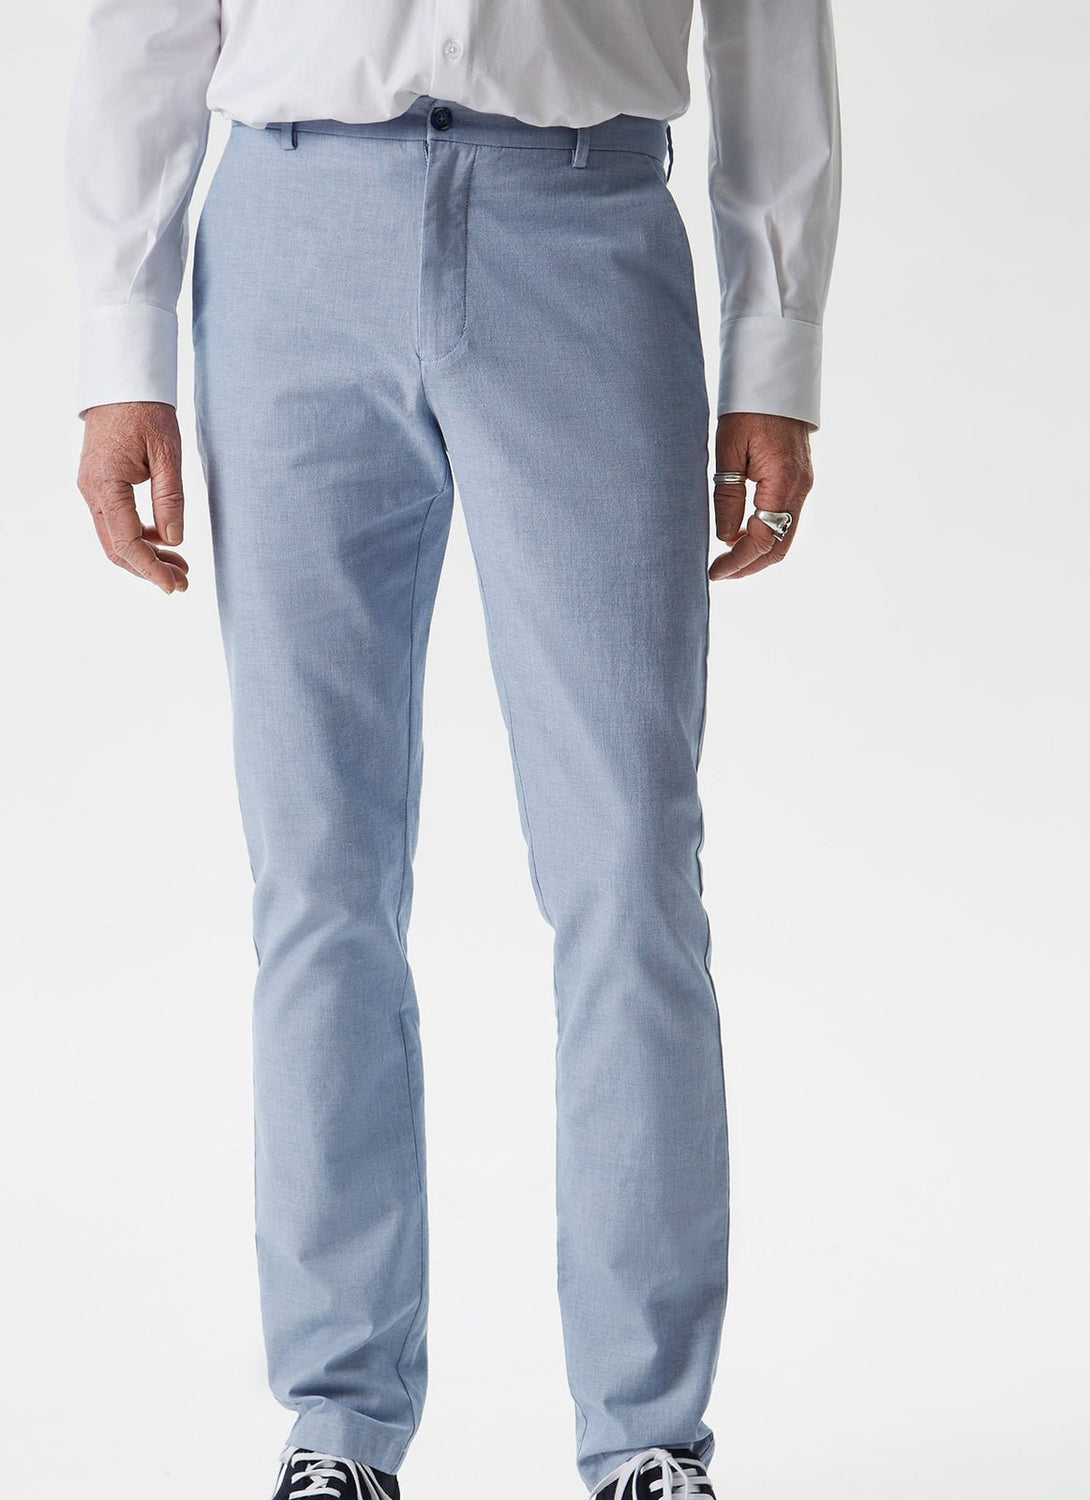 Men Trousers | Light Blue Elasticc Cotton Trousers by Spanish designer Adolfo Dominguez